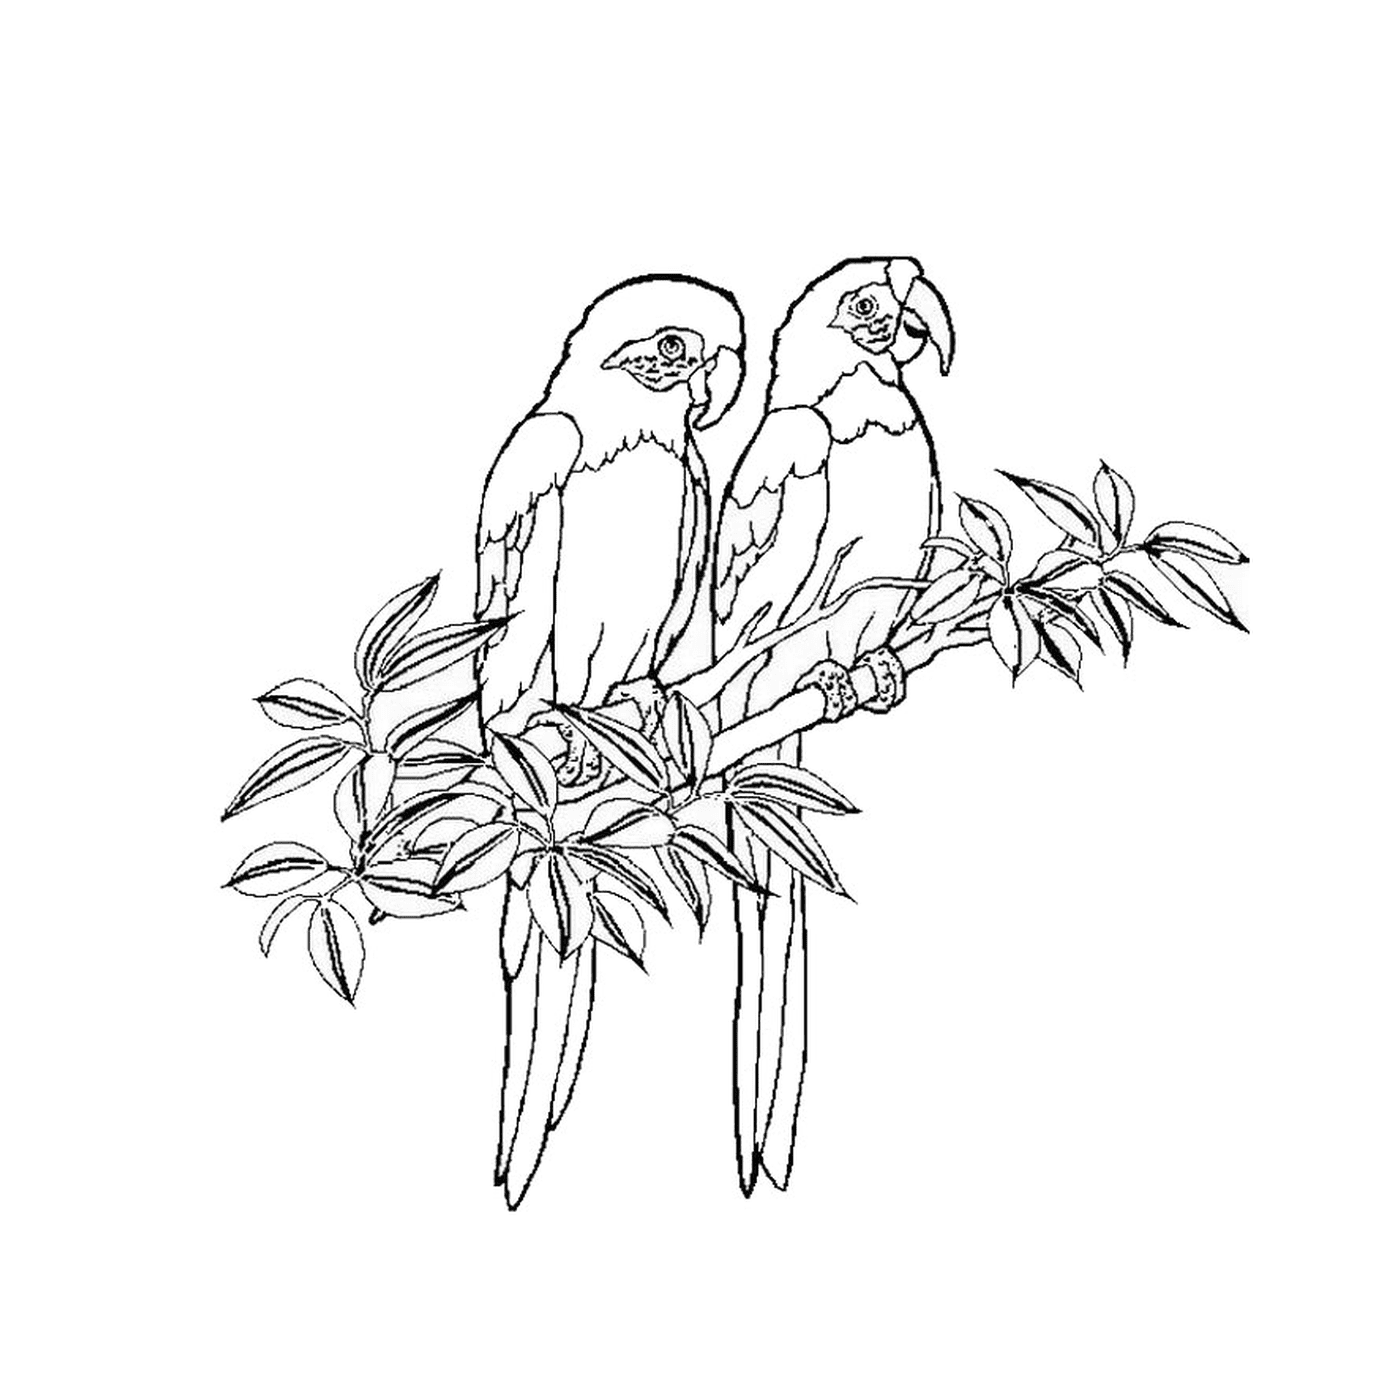   Deux perruches assises sur une branche d'arbre 